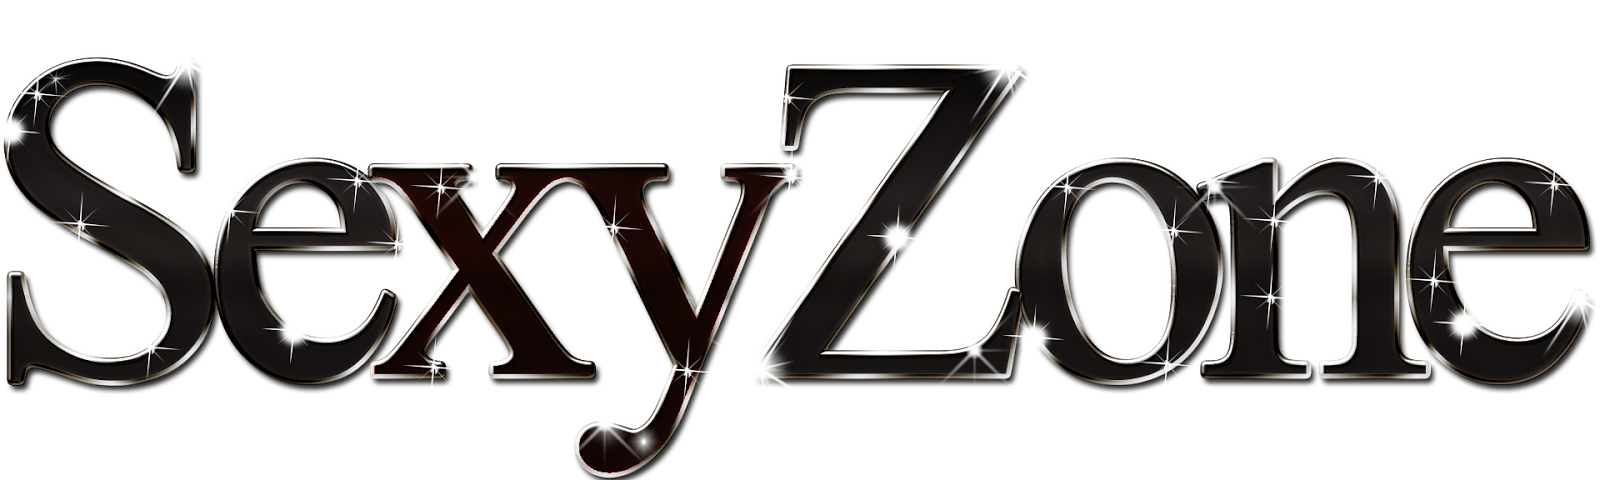 Logodol 全てが高画質 背景透過なアーティストのロゴをお届けするブログ Hiphop B系みたいなピカピカでキラキラなsexy Zoneのロゴ７つ